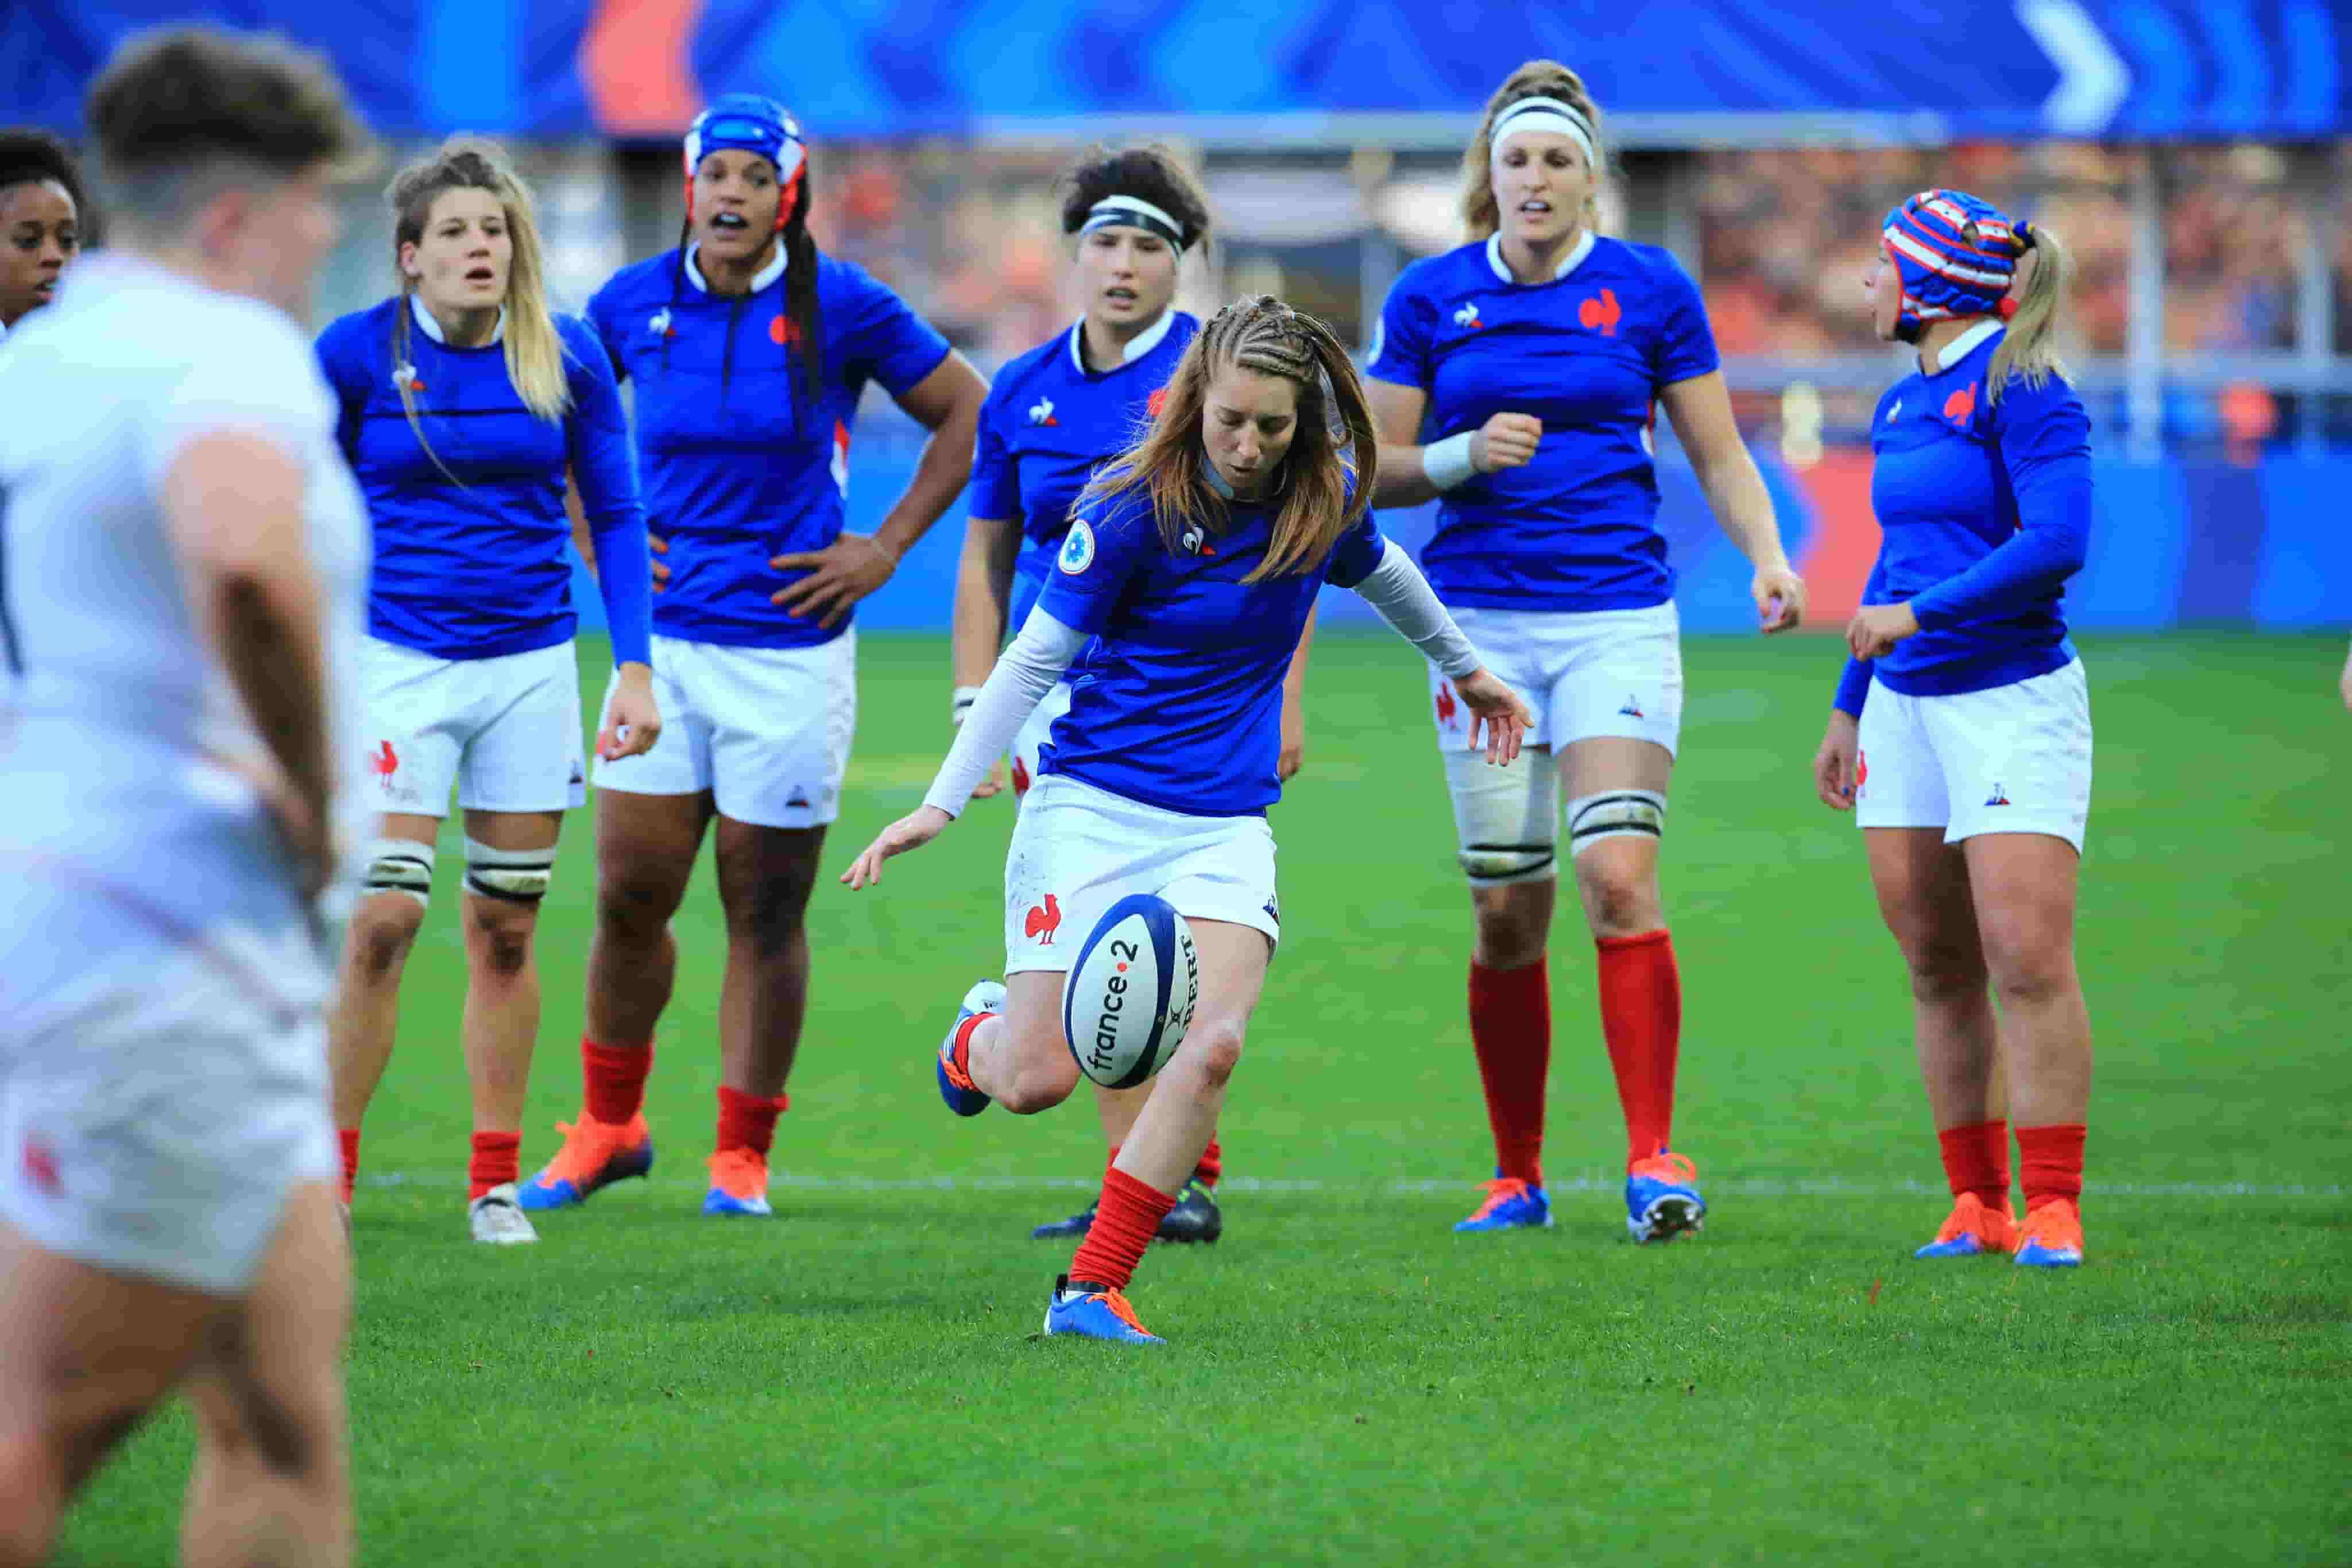 Rugby Le Sport Au Feminin